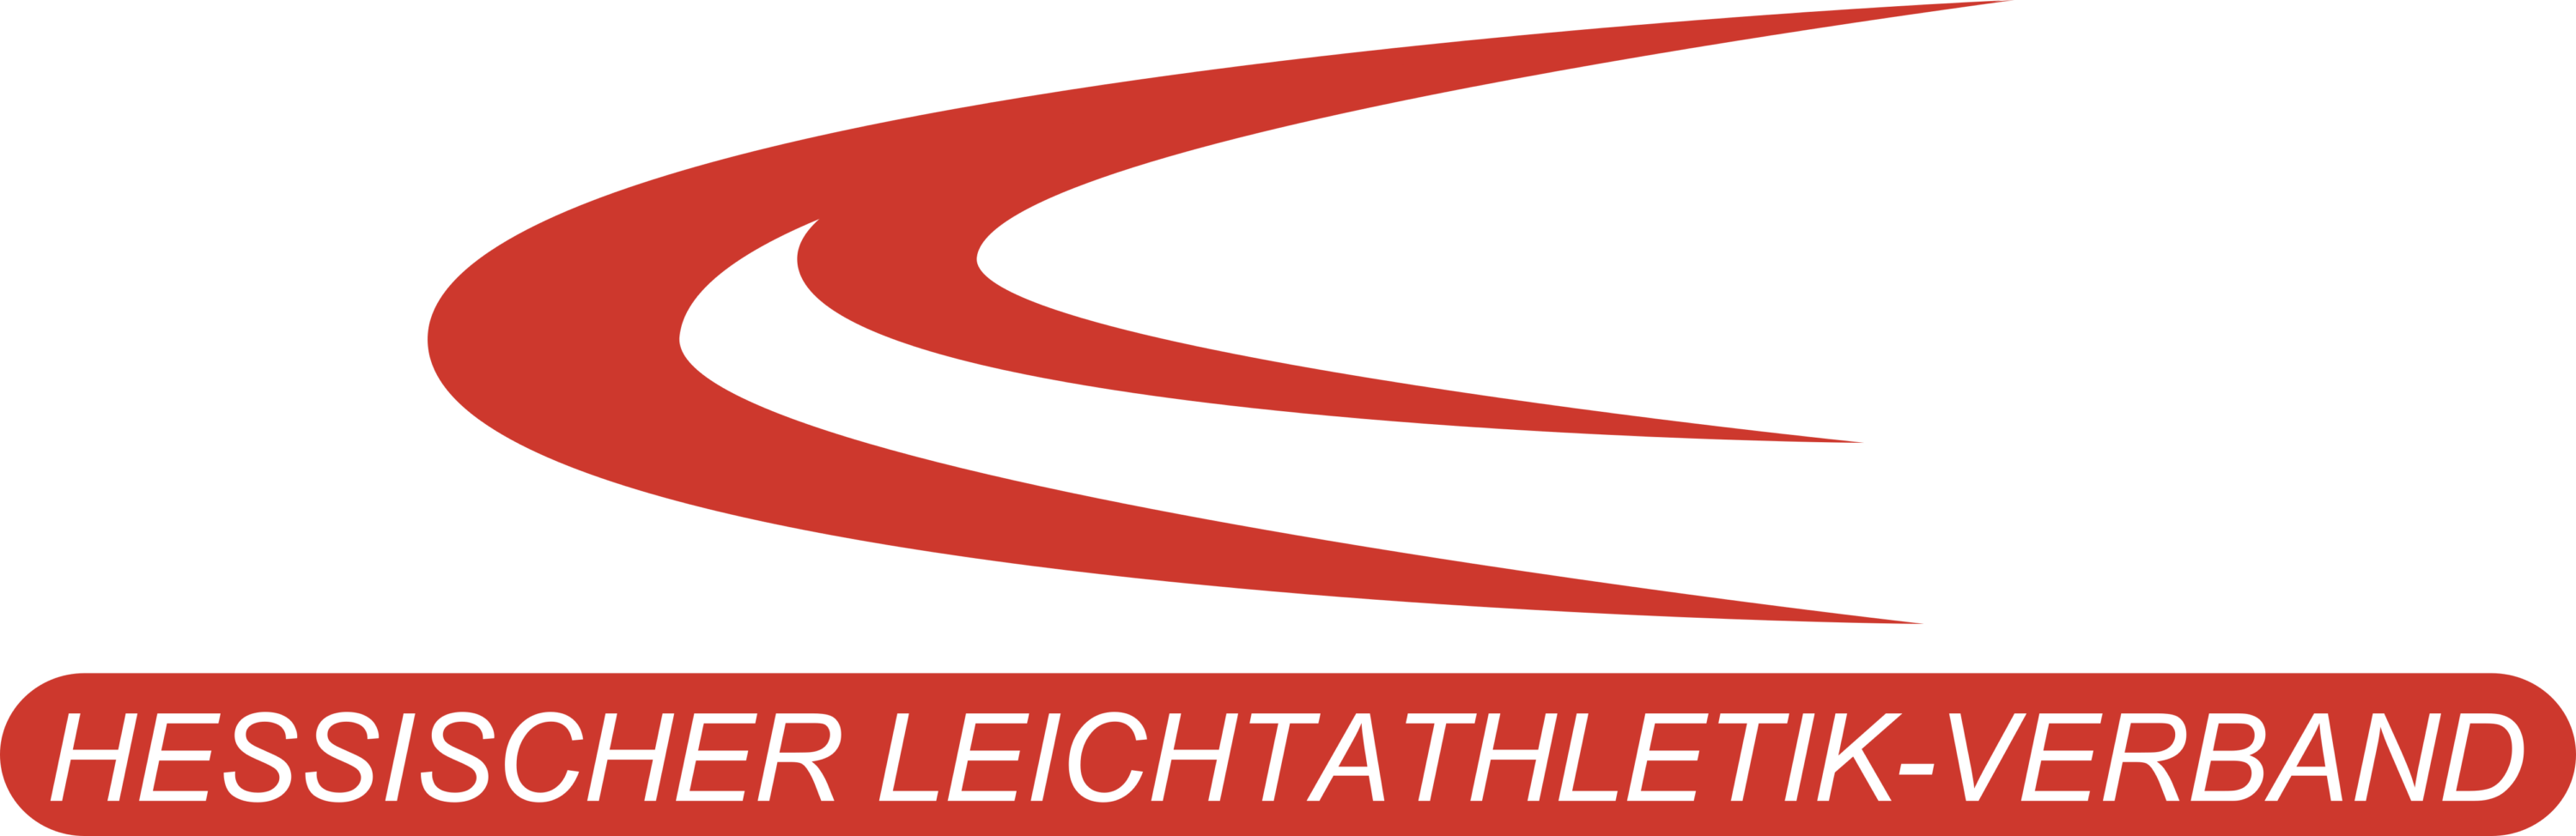 Hessischer Leichtathletik Verband Logo